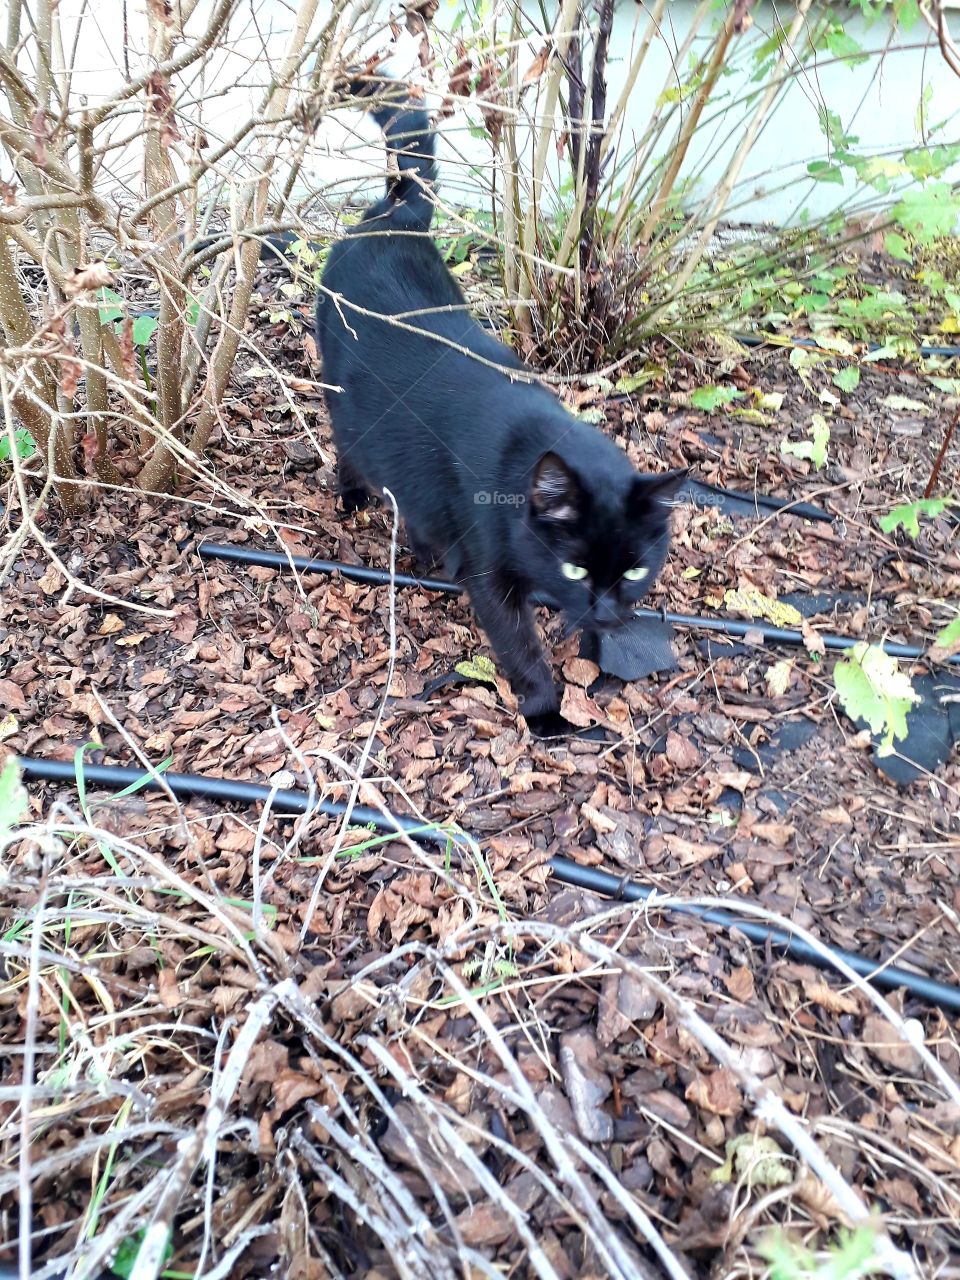 autumn garden  - black cat with green eyes in shrubs